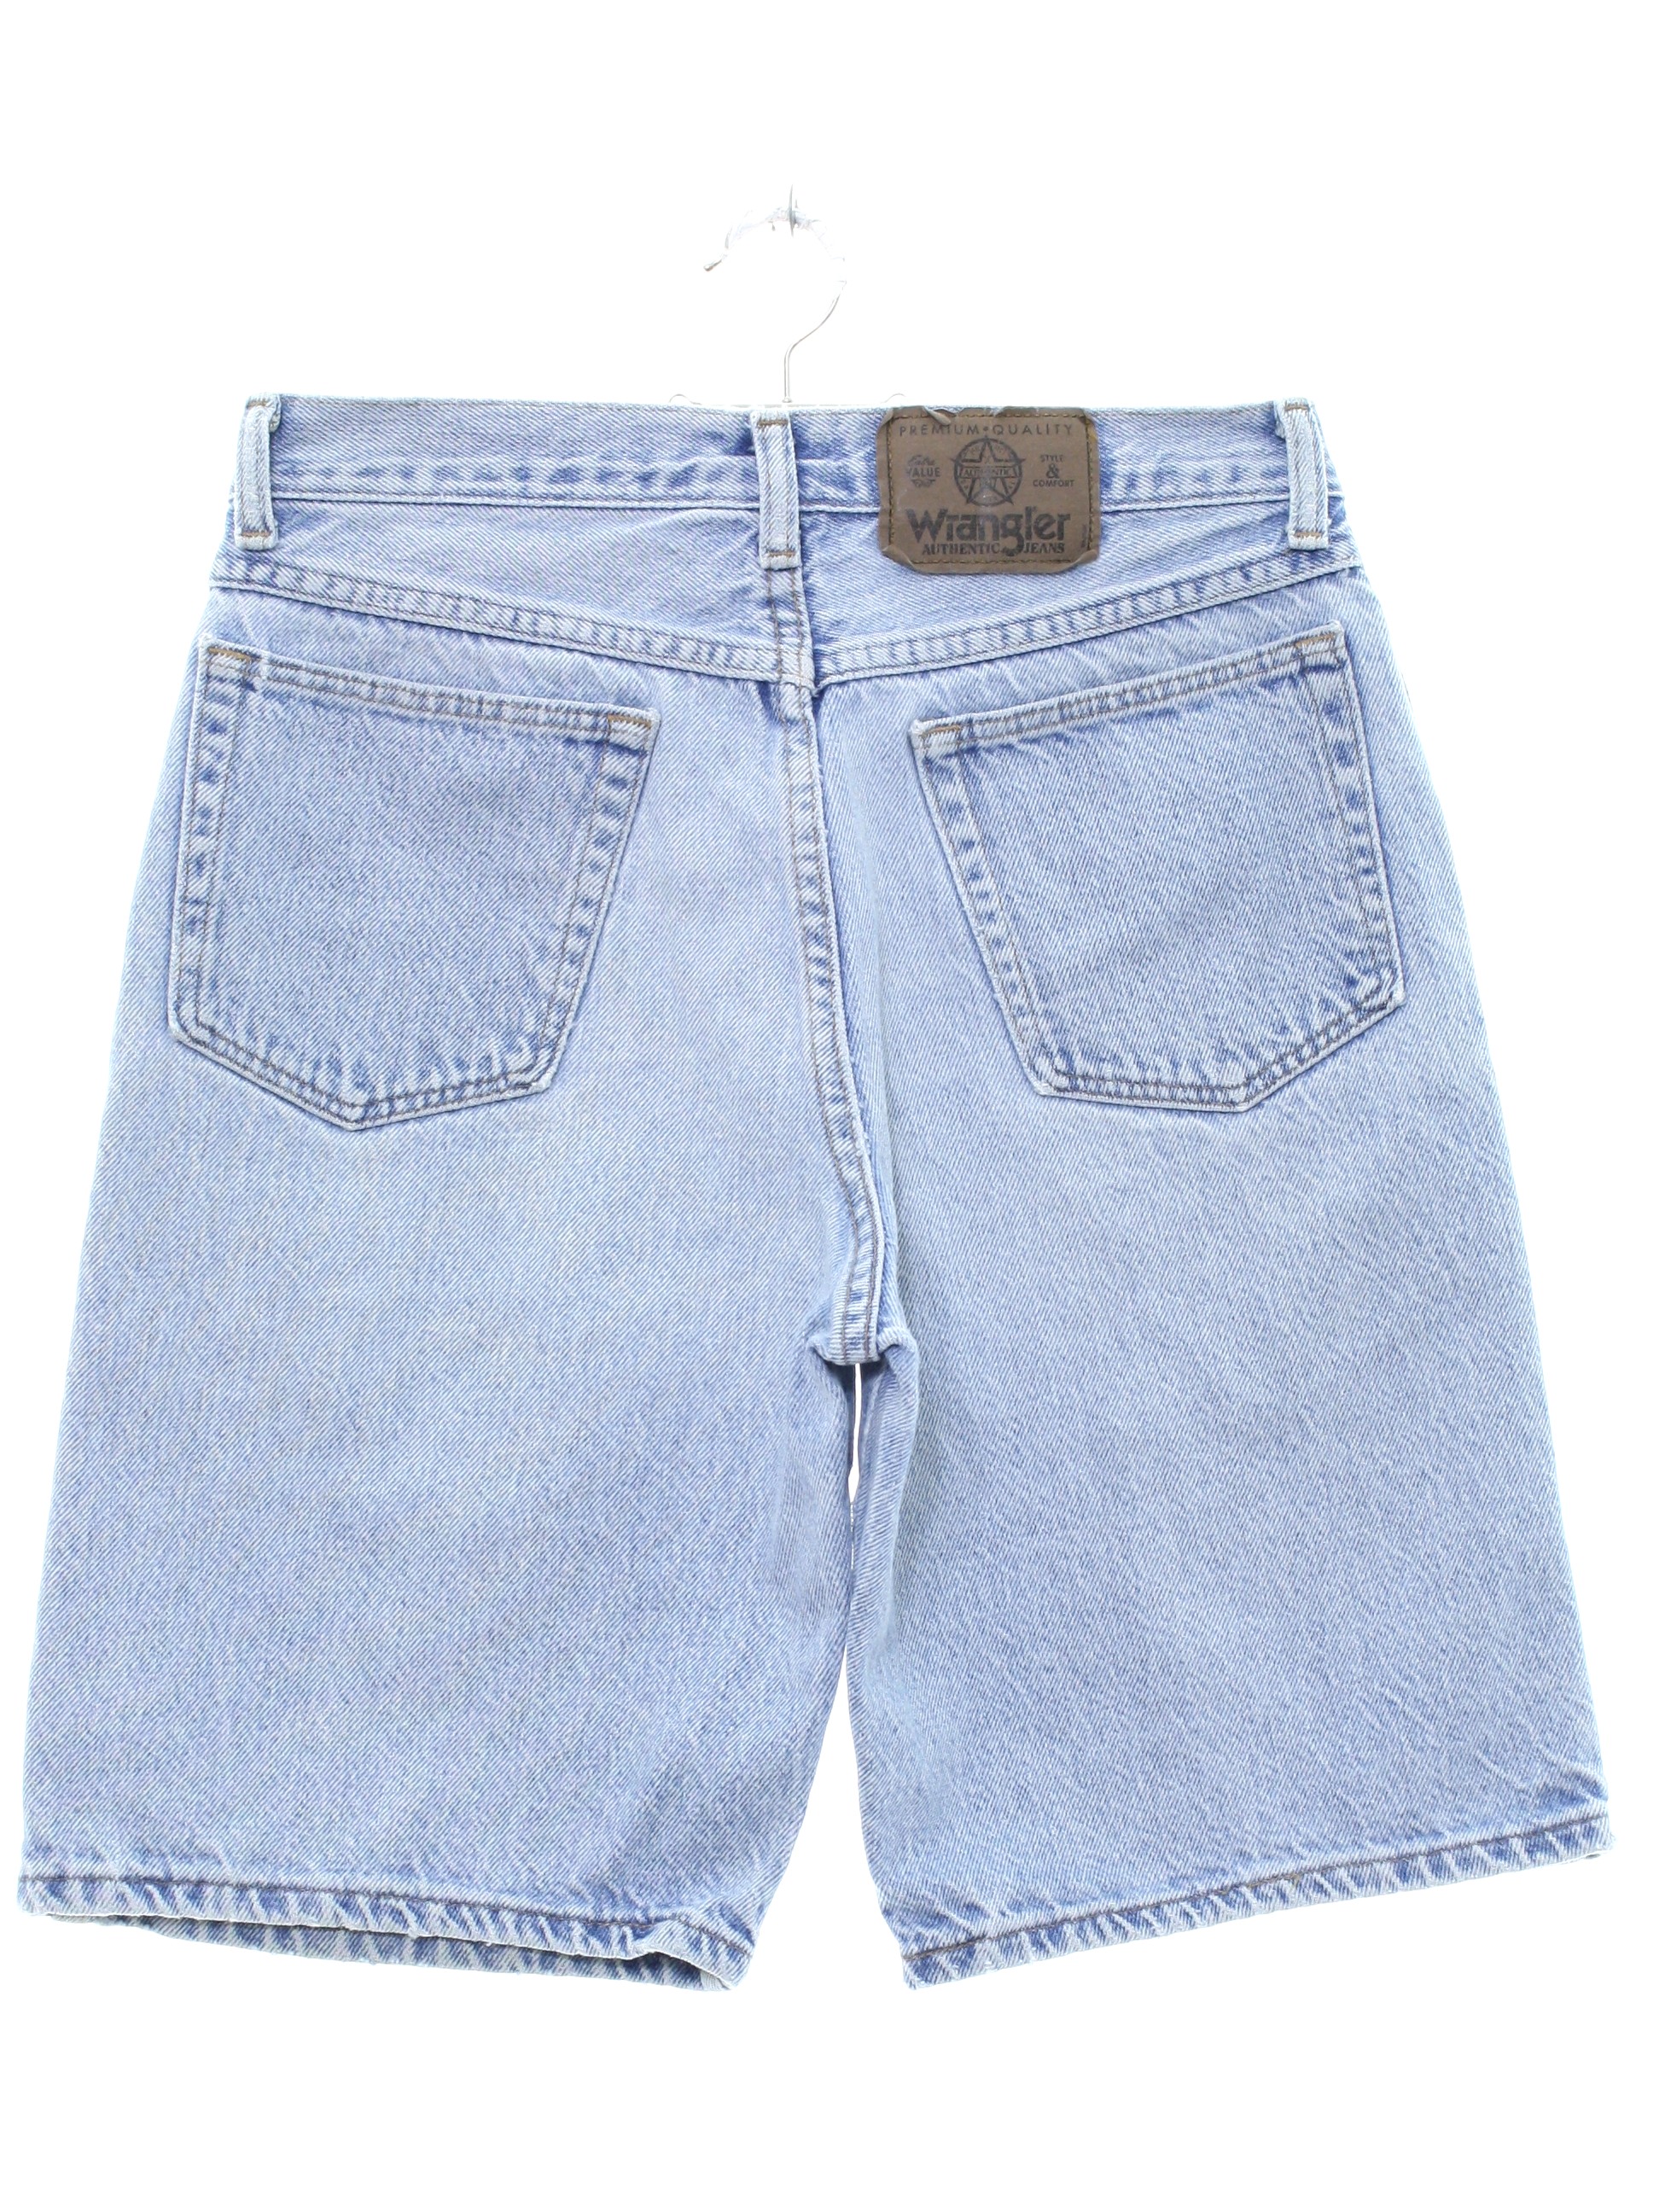 80s Vintage Wrangler Shorts: 80s -Wrangler- Unisex light wash ...